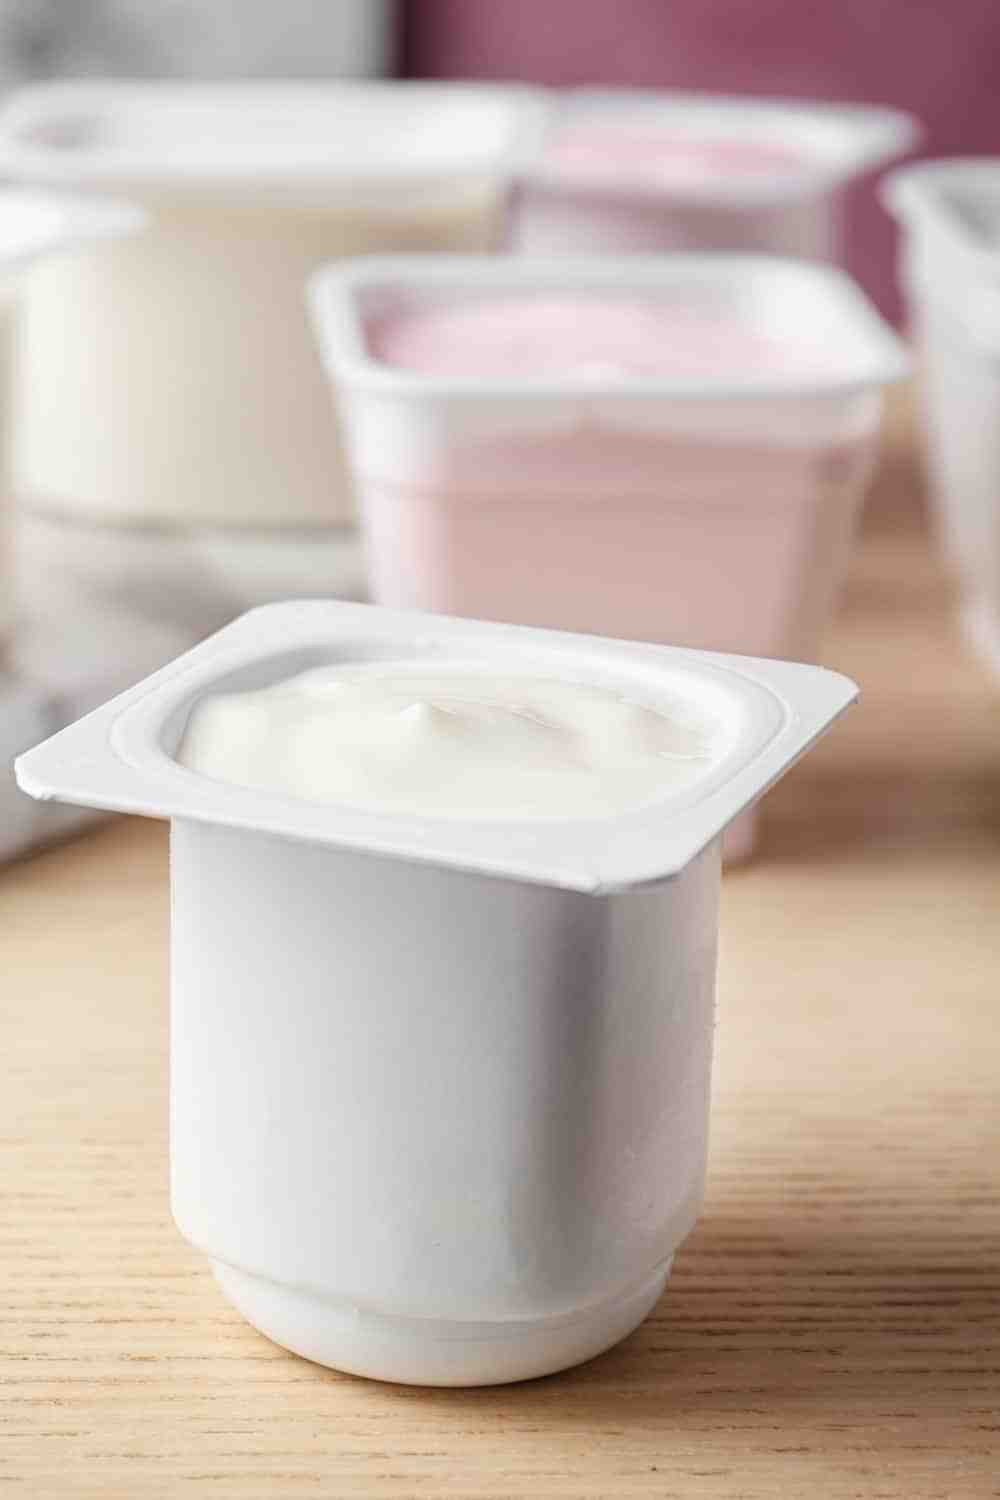 Est-ce qu'on peut manger un yaourt périmé ?